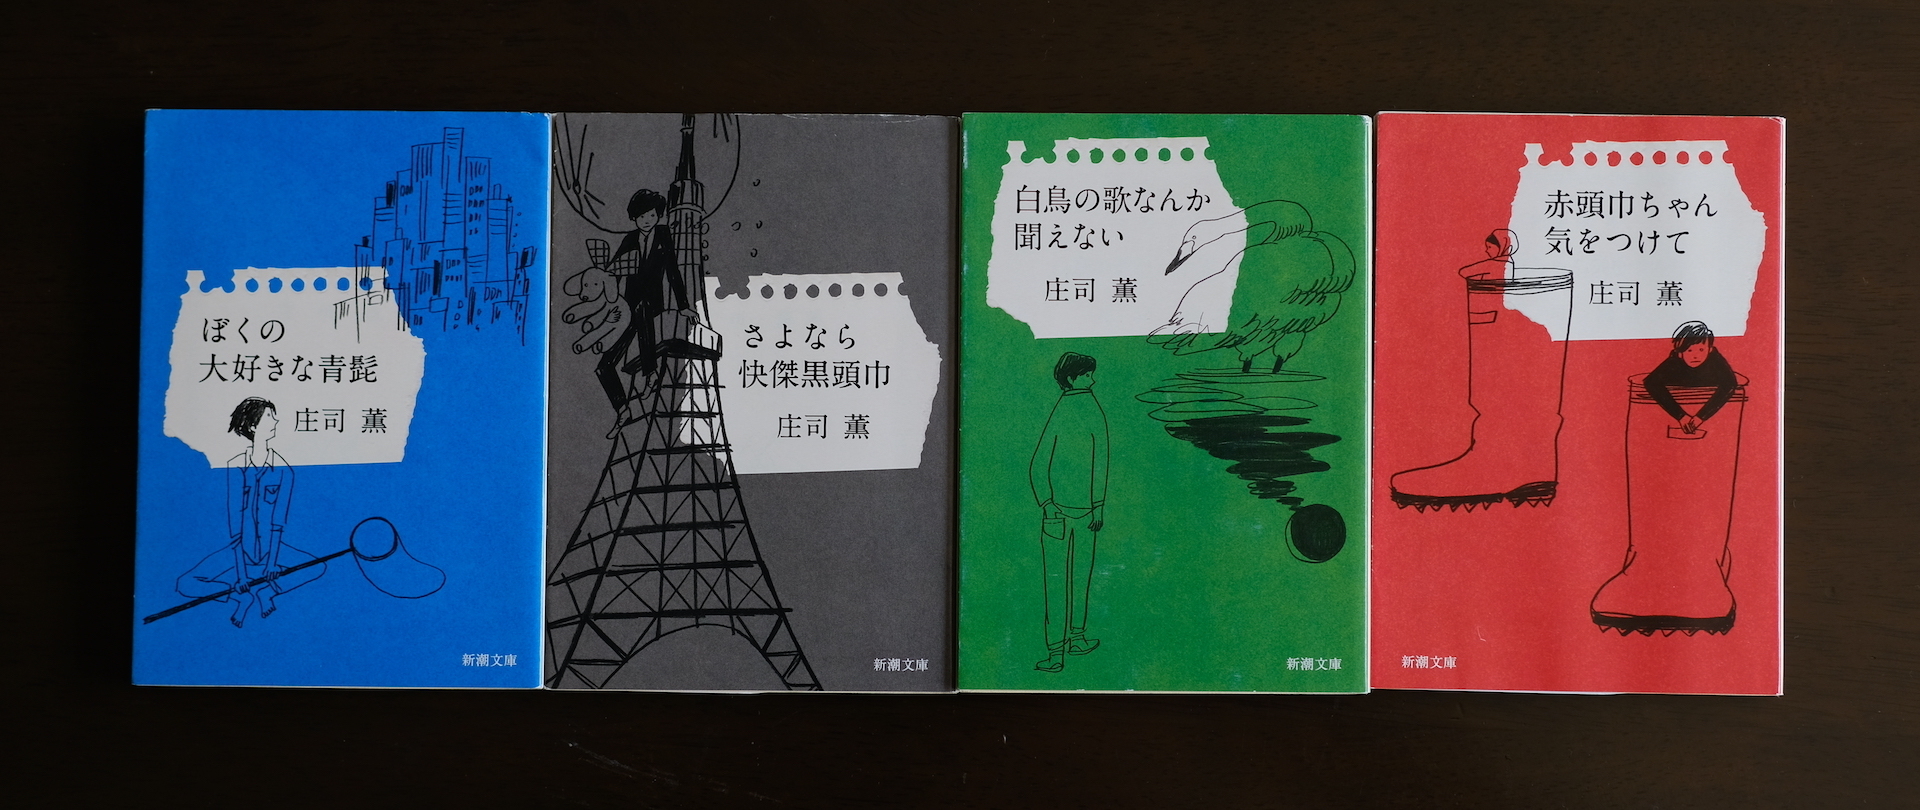 庄司薫〈薫くんシリーズ〉を読みました。（再）: my photo diary - 小説一般